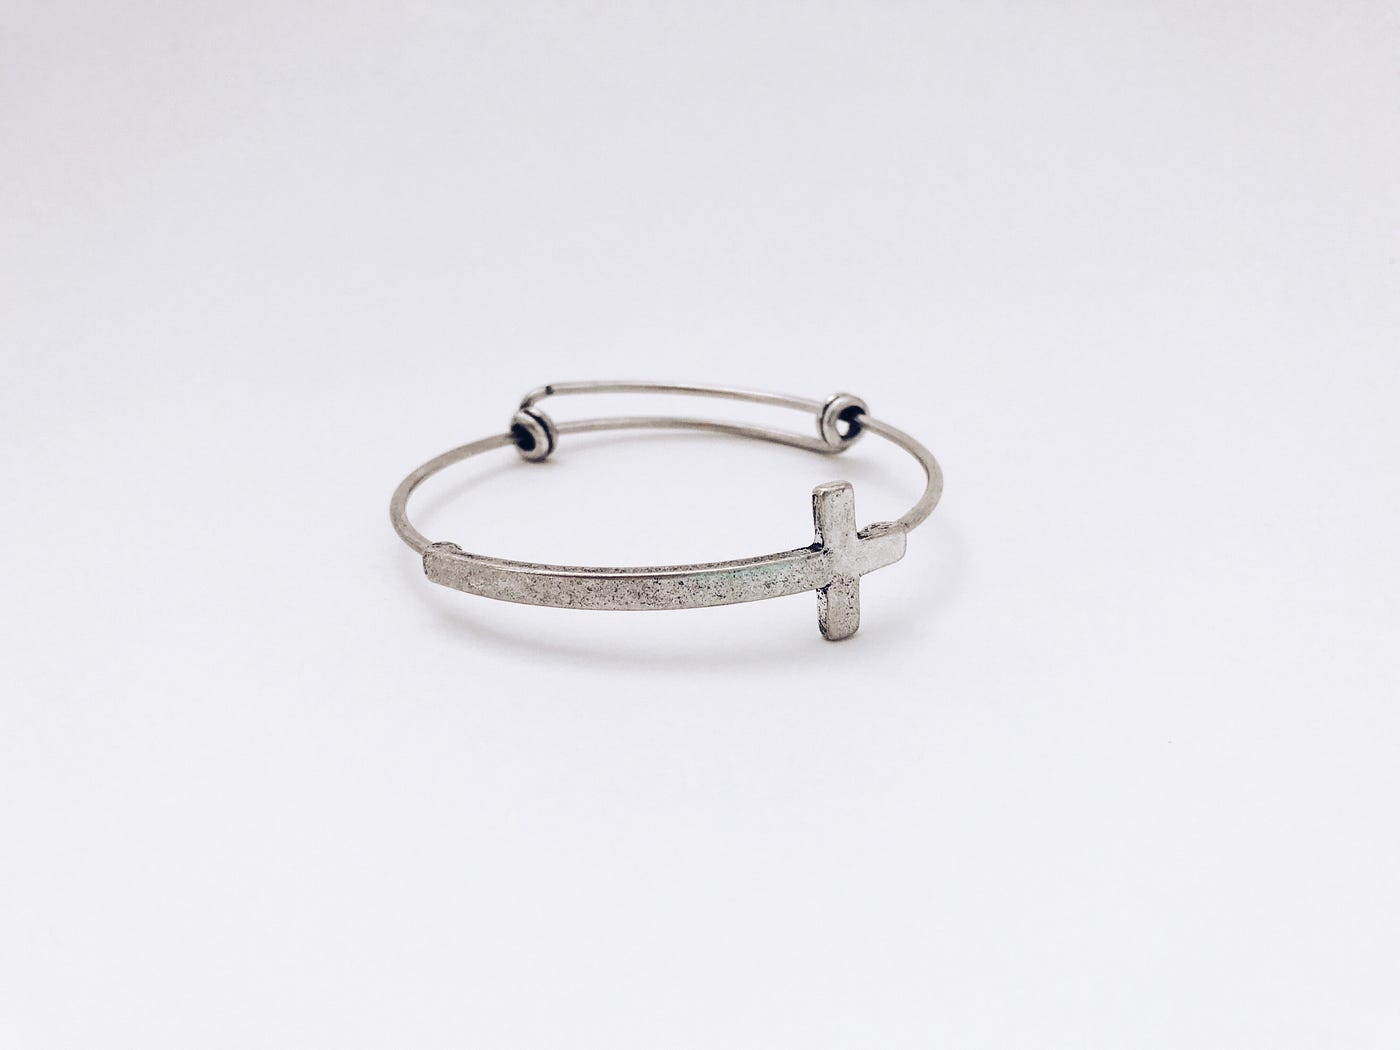 Louis Vuitton Silver Stackable Bracelet Black Gold